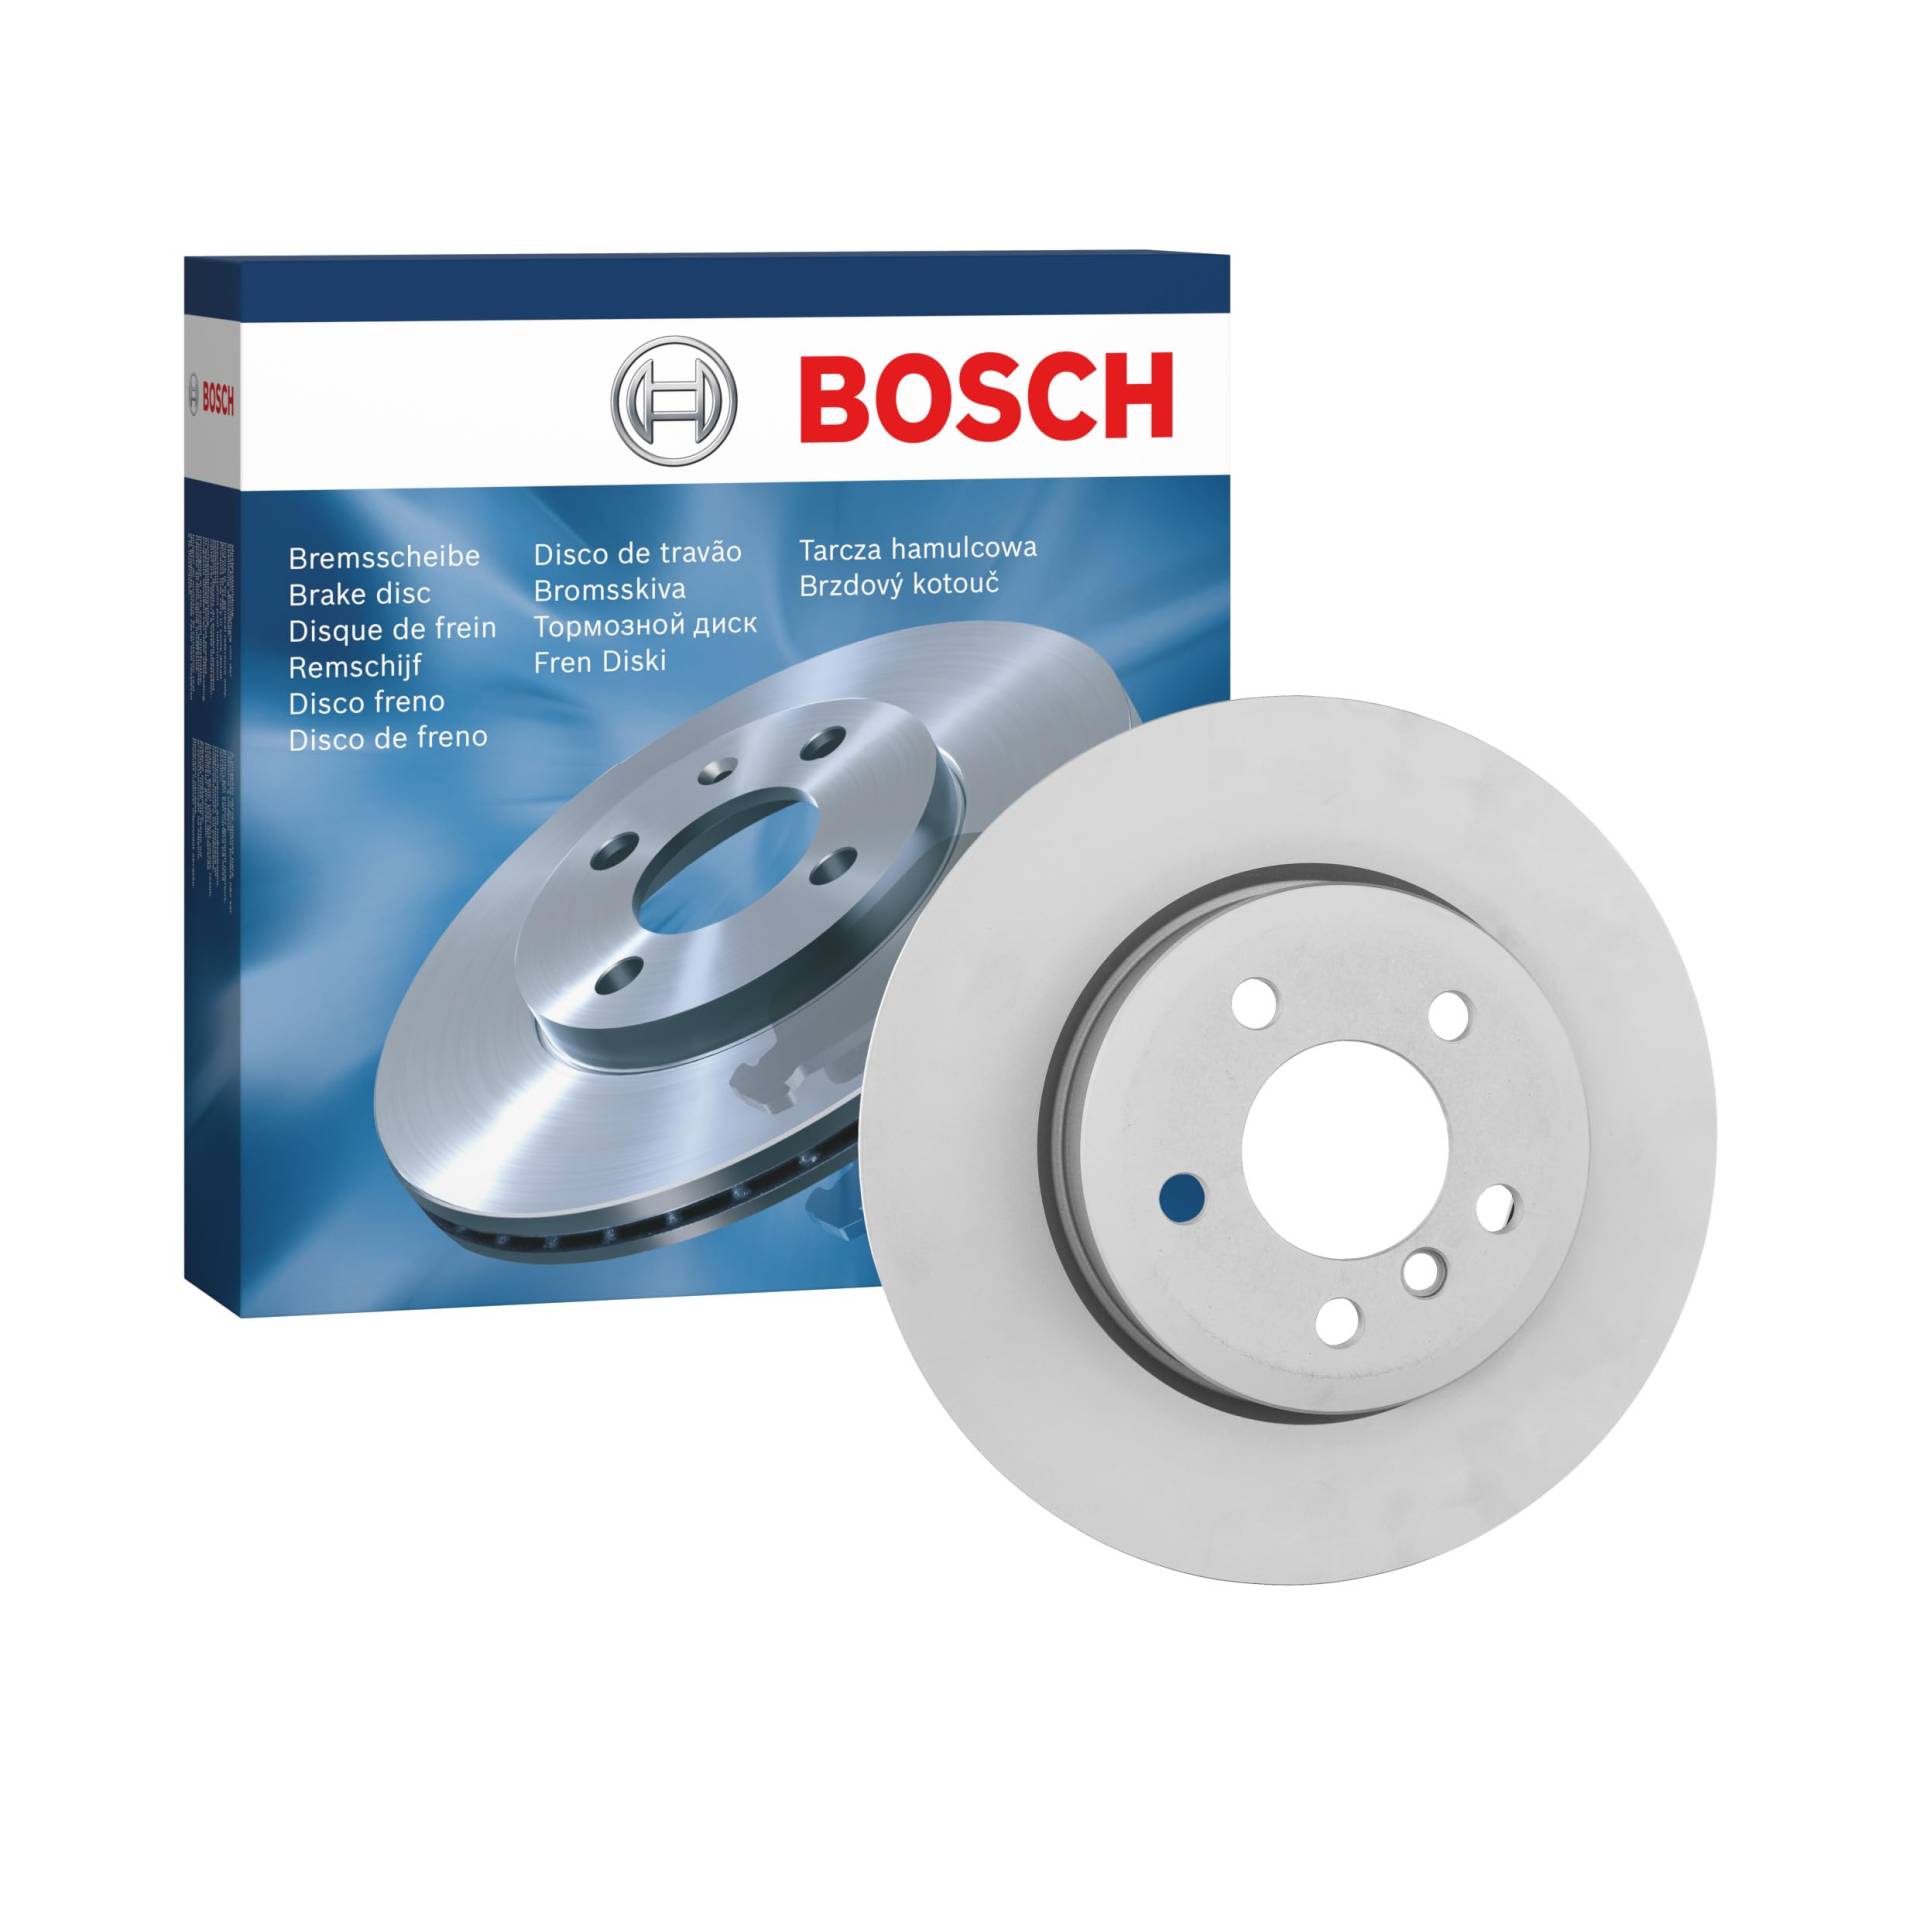 Bosch BD1195 Bremsscheiben - Vorderachse - ECE-R90 Zertifizierung - eine Bremsscheibe von Bosch Automotive